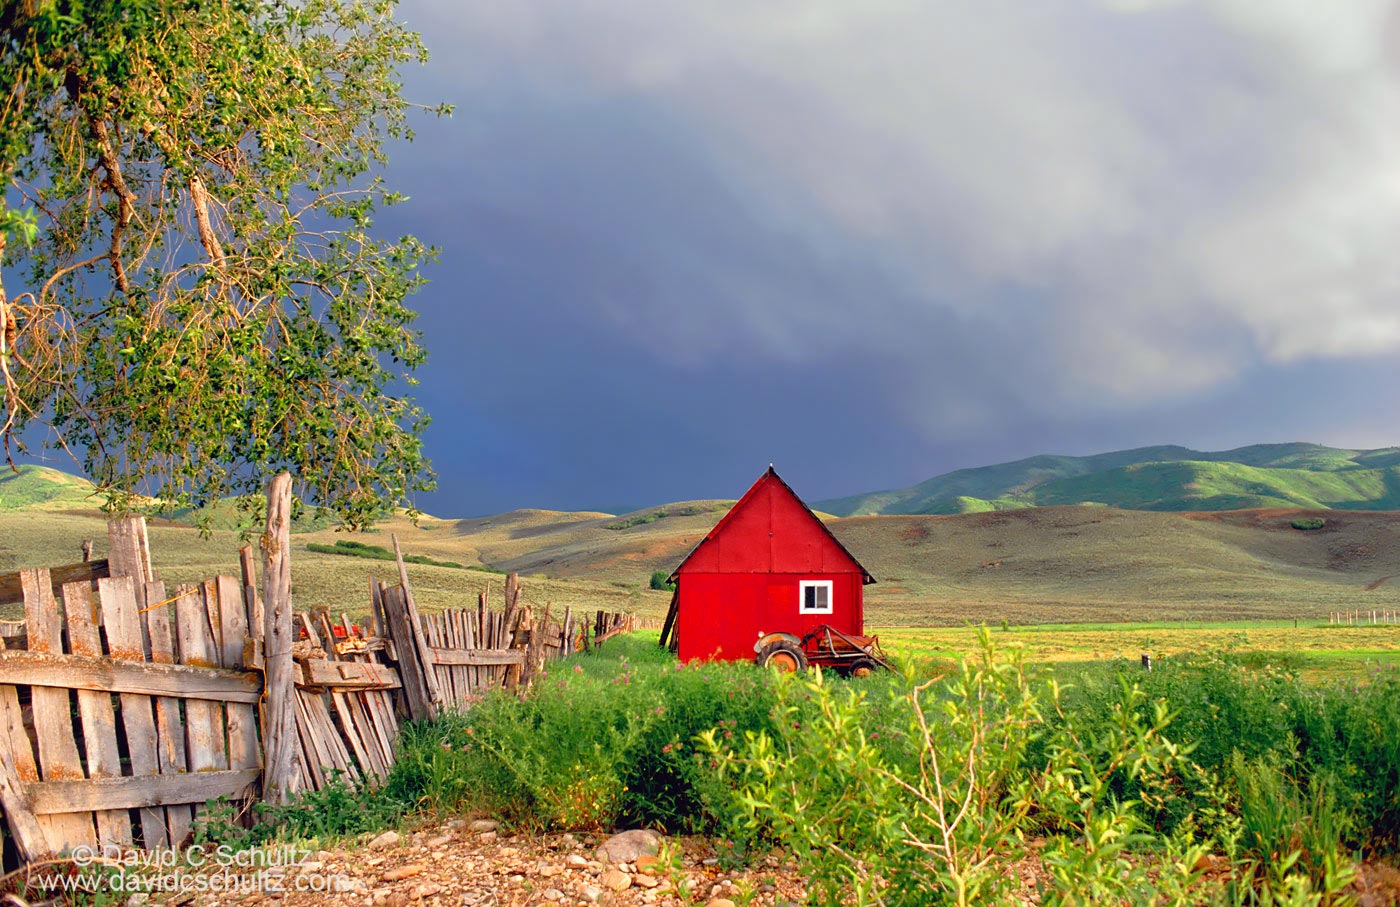 Red barn Heber Utah - Image #13-55